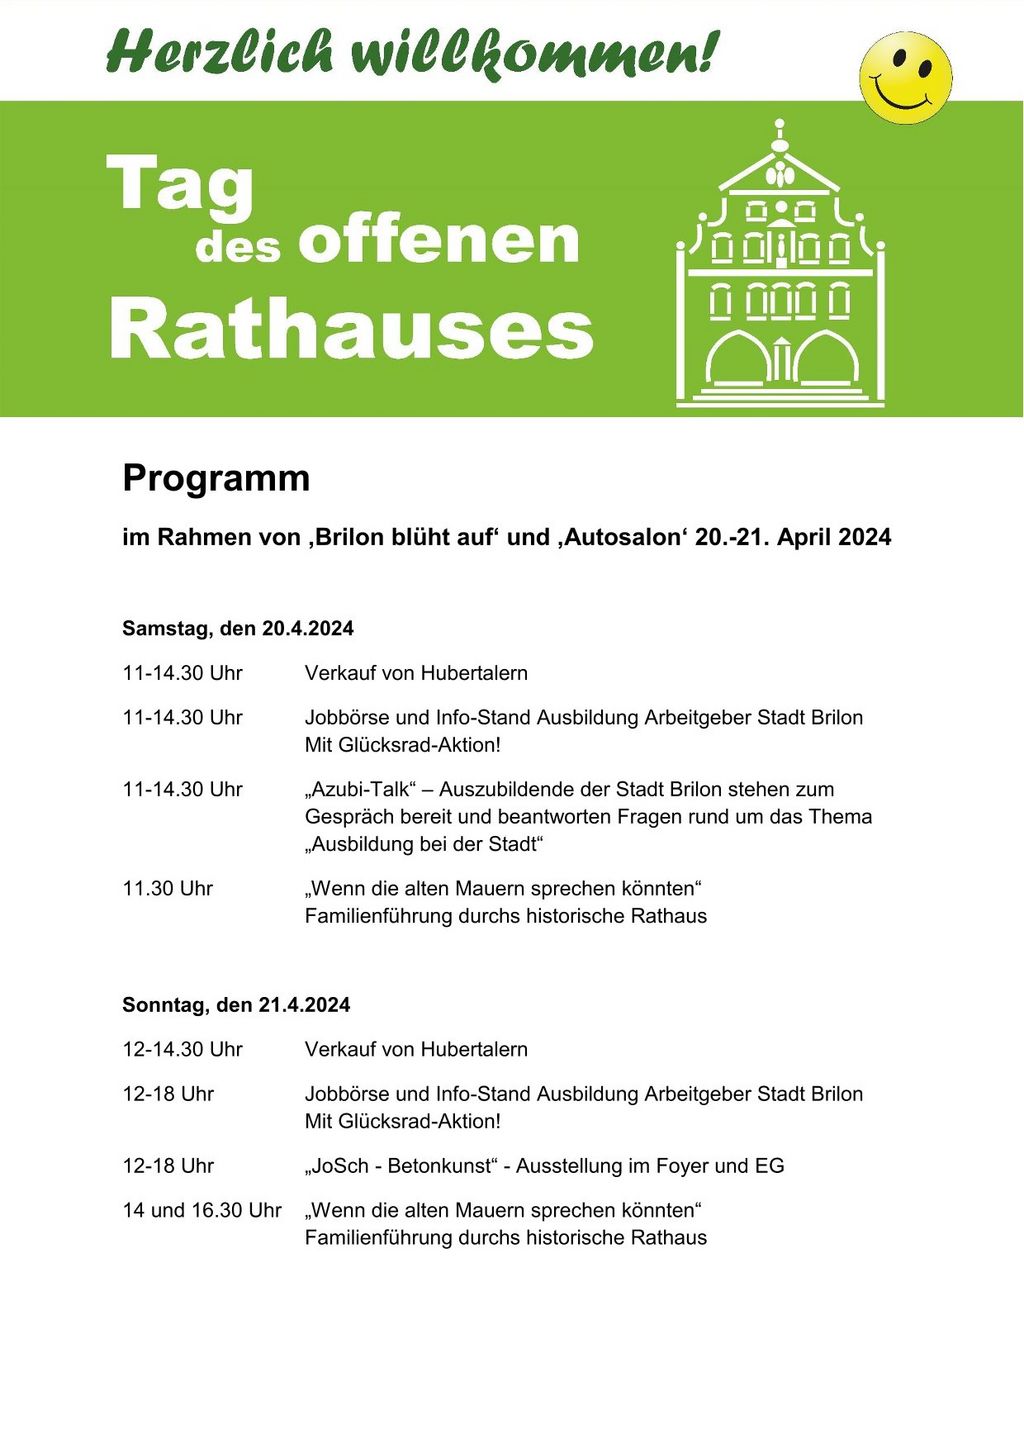  Programm im Rahmen von Autosalon und „Brilon blüht auf“ am 20. und 21. April 2024